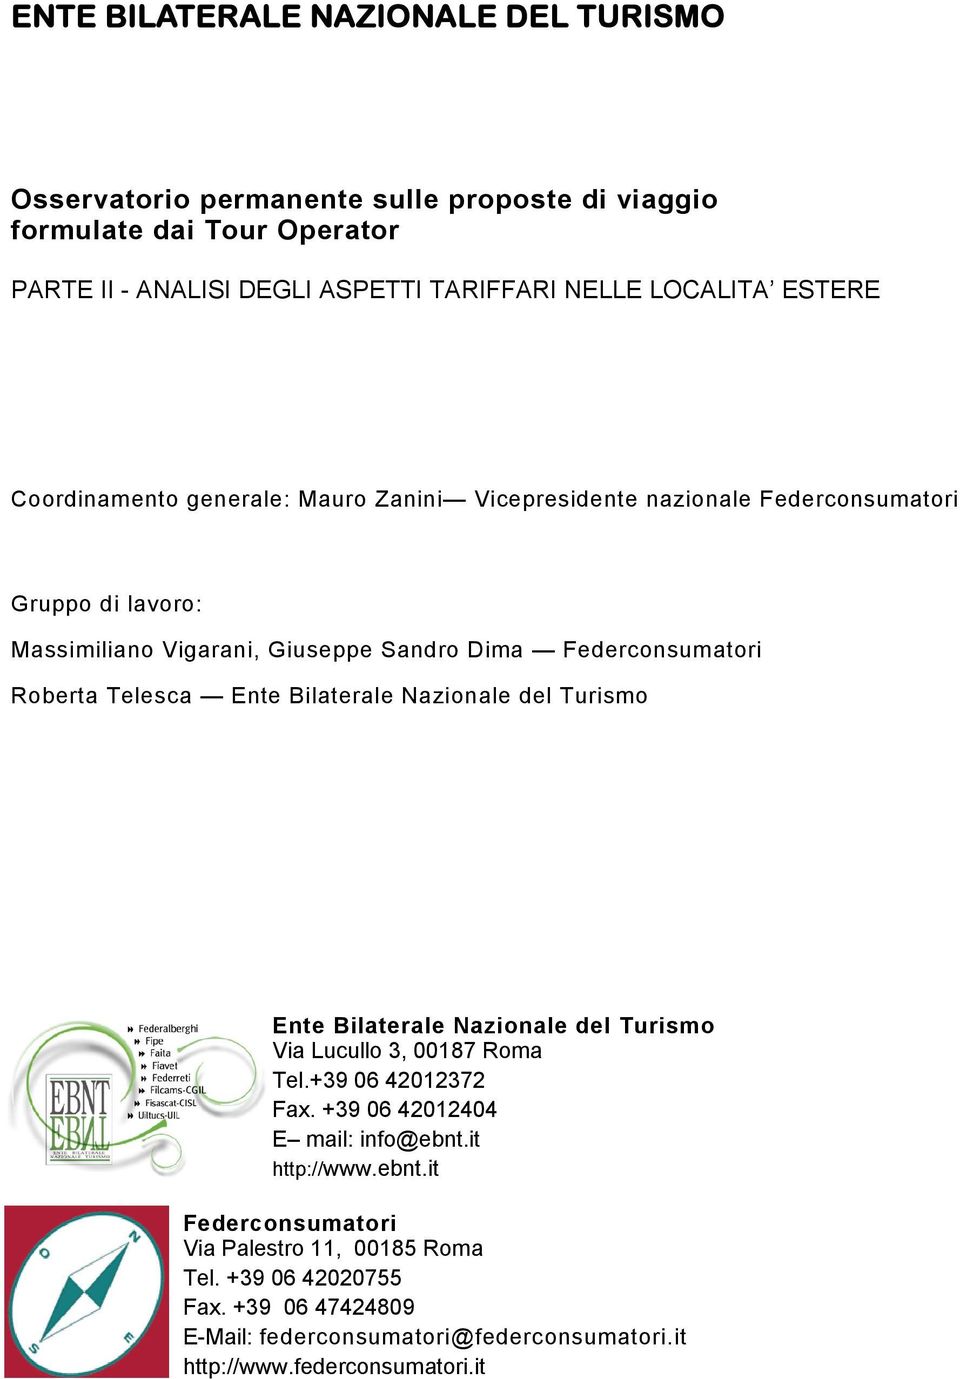 Telesca Ente Bilaterale Nazionale del Turismo Ente Bilaterale Nazionale del Turismo Via Lucullo 3, 00187 Roma Tel.+39 06 42012372 Fax. +39 06 42012404 E mail: info@ebnt.